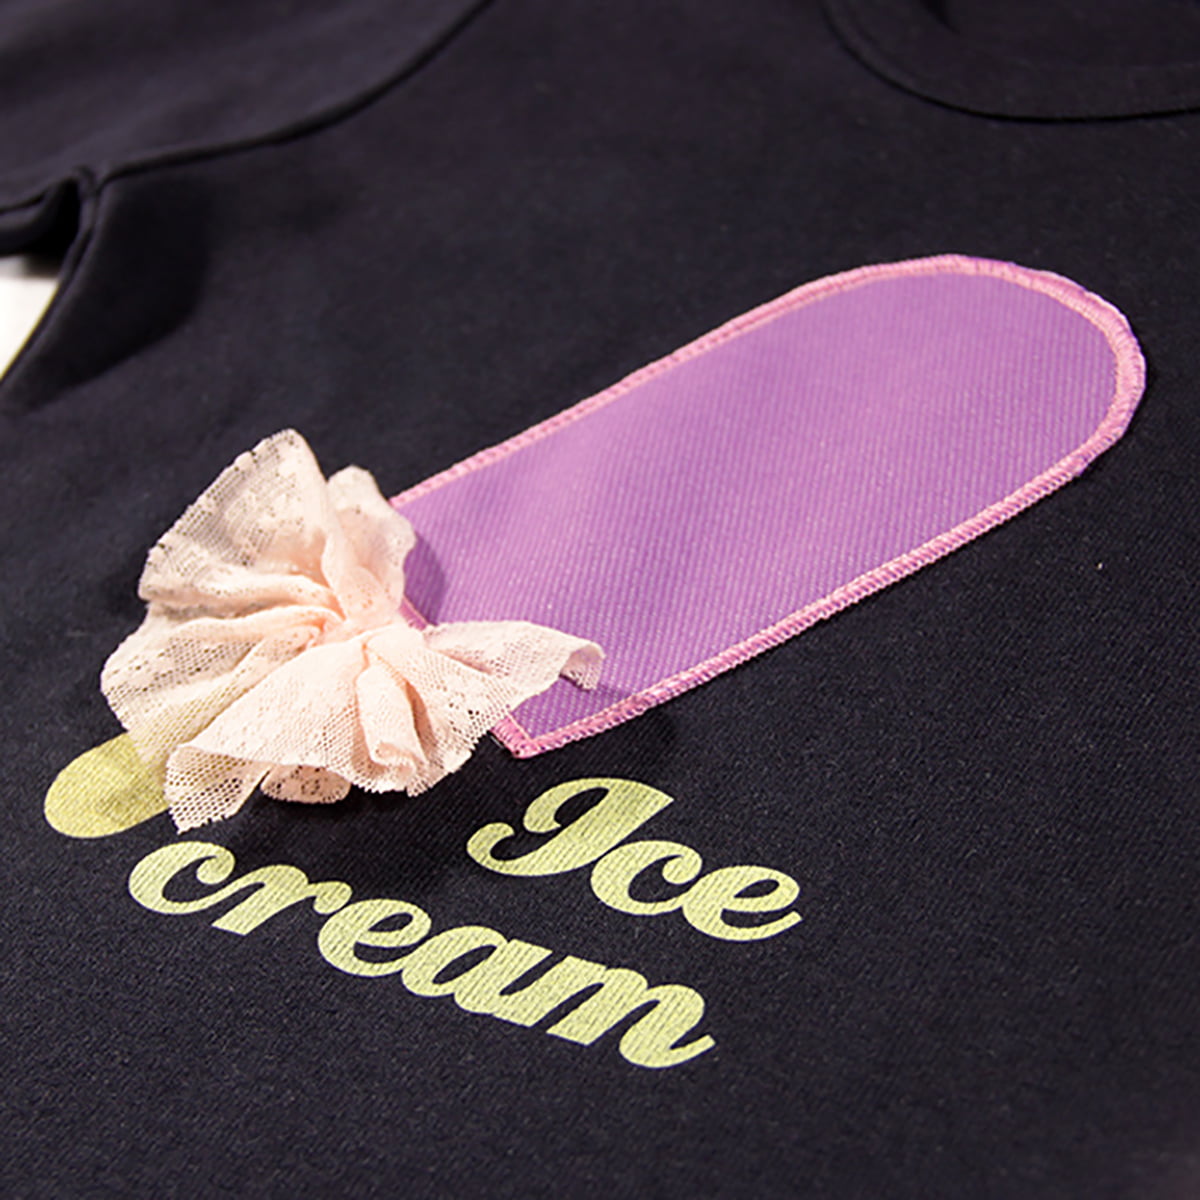 ice cream retro aplikacija na majici